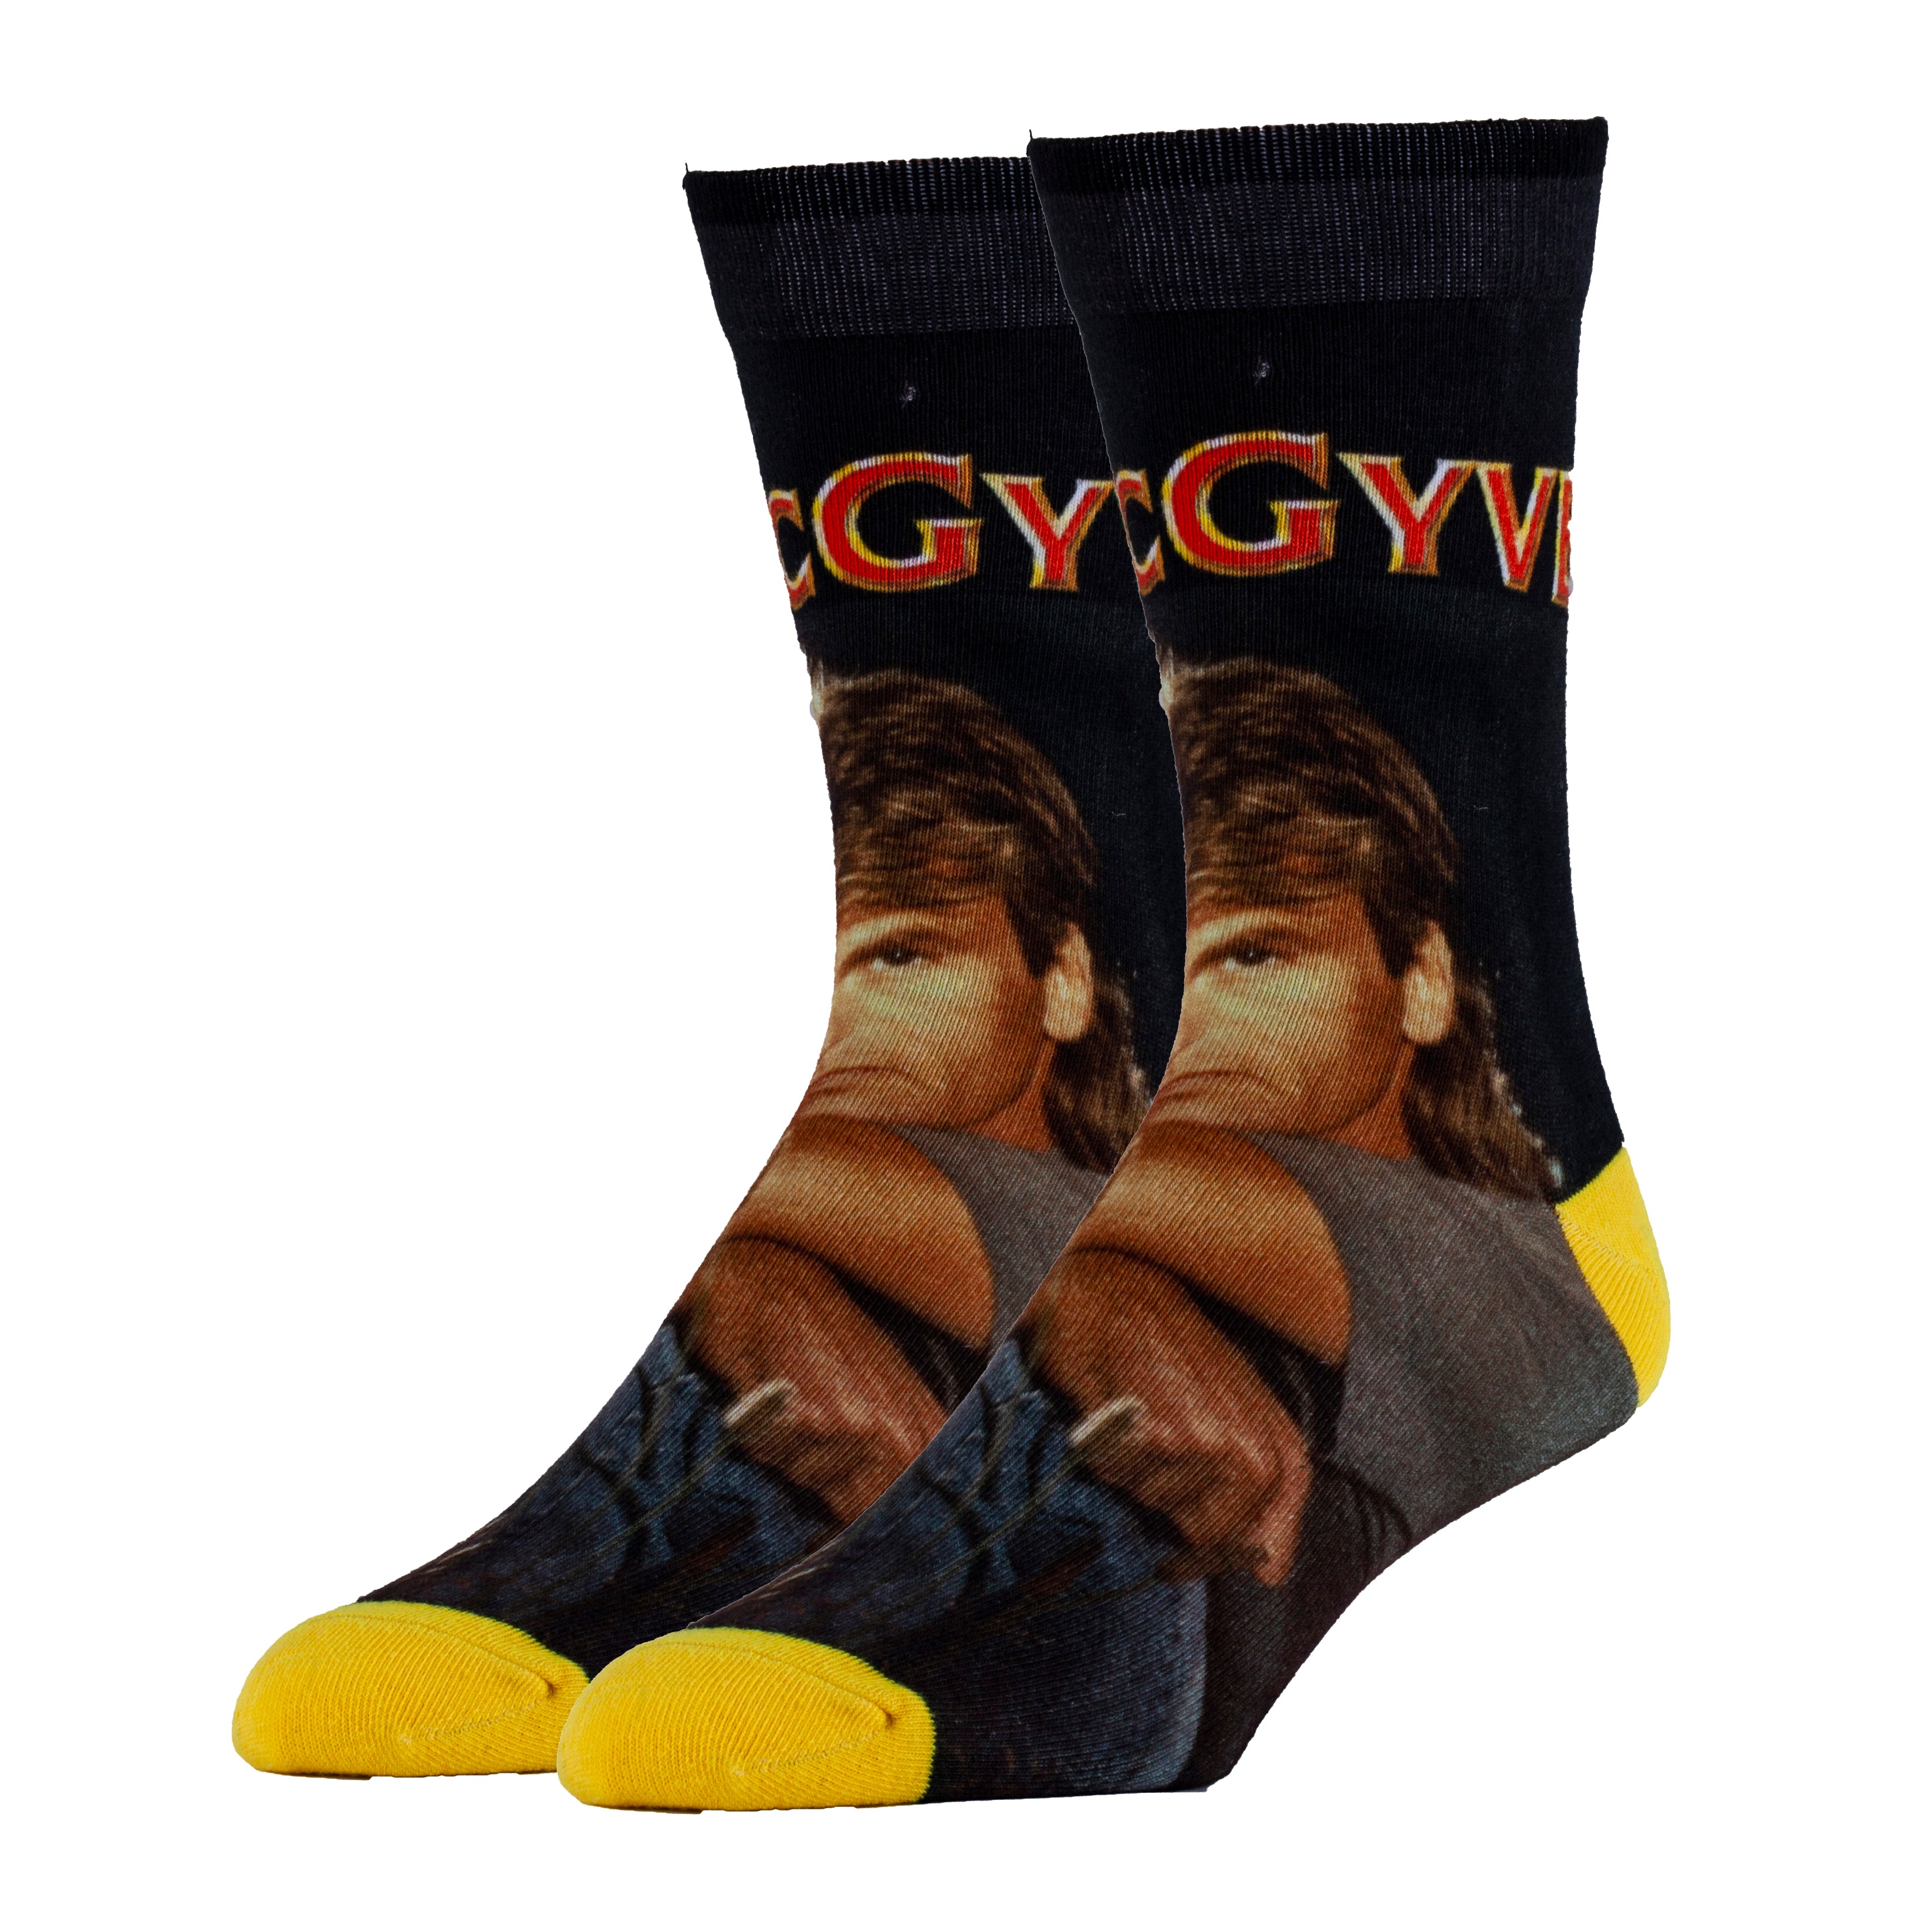 Only MacGyver Socks | TV Show Crew Socks for Men